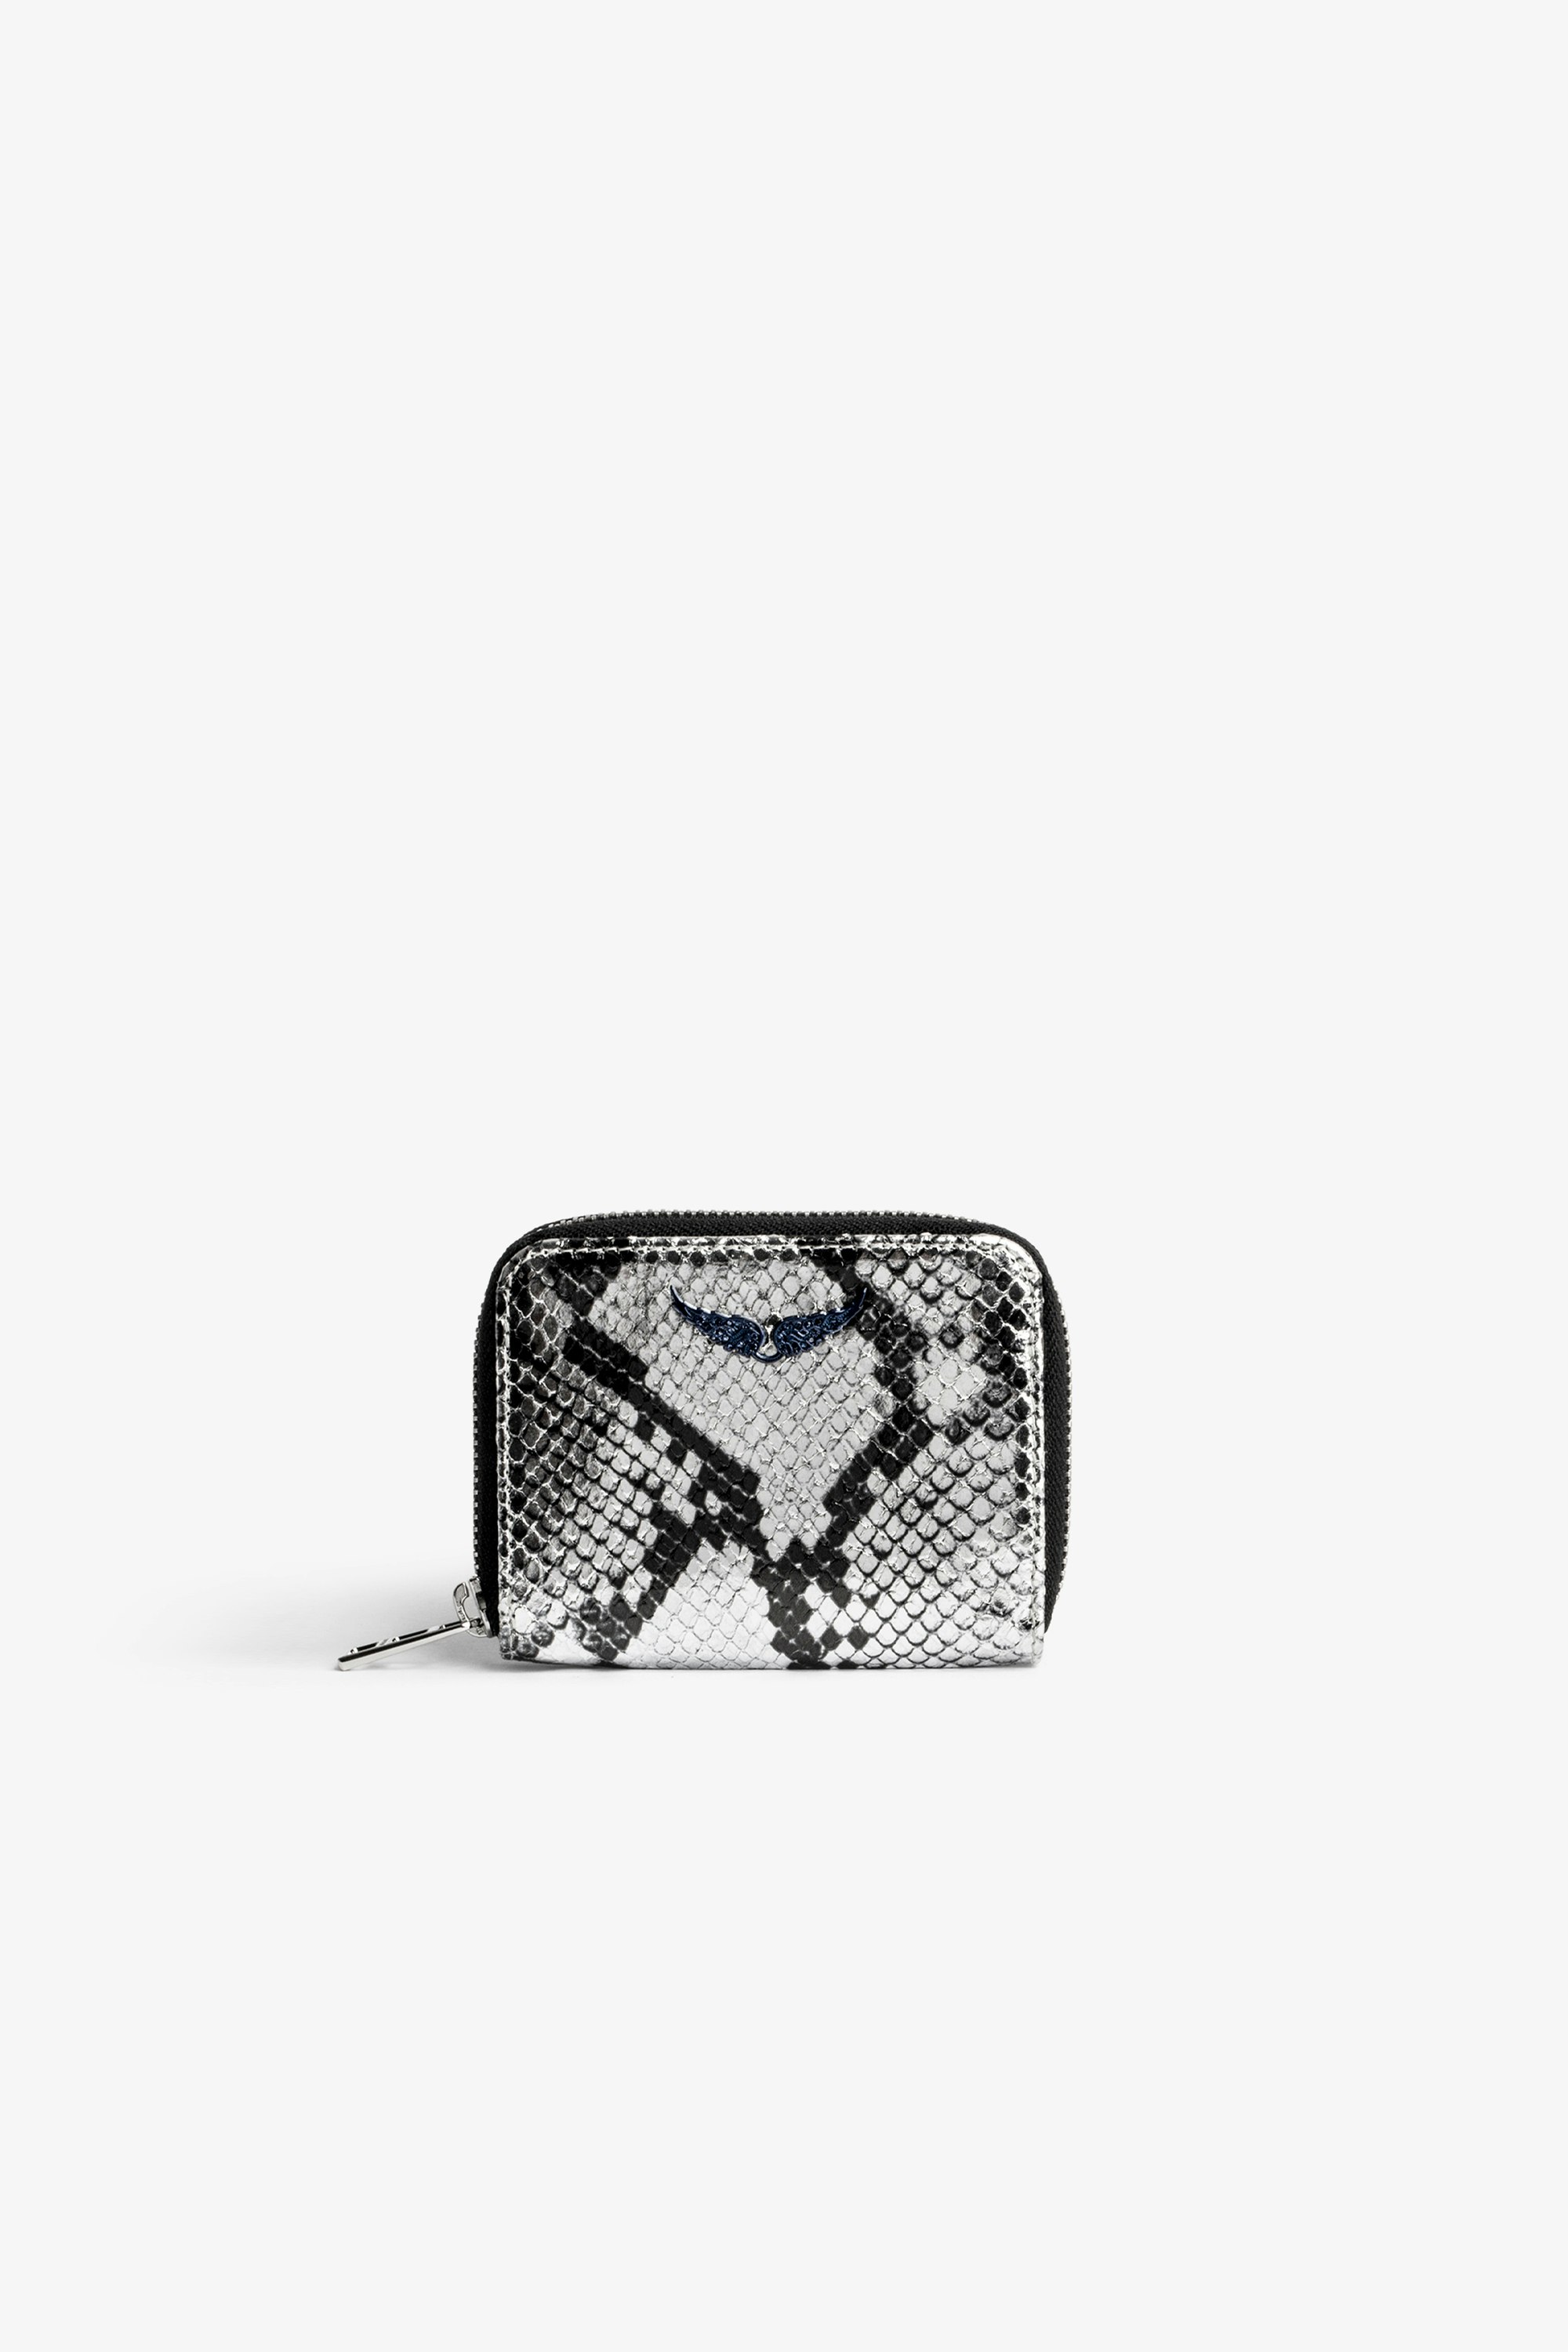 Portemonnaie Mini ZV Damen-Portemonnaie mit Reißverschluss aus silberfarbenem Metallic-Leder in Schlangenoptik mit einem kristallbesetzten Flügel-Charm